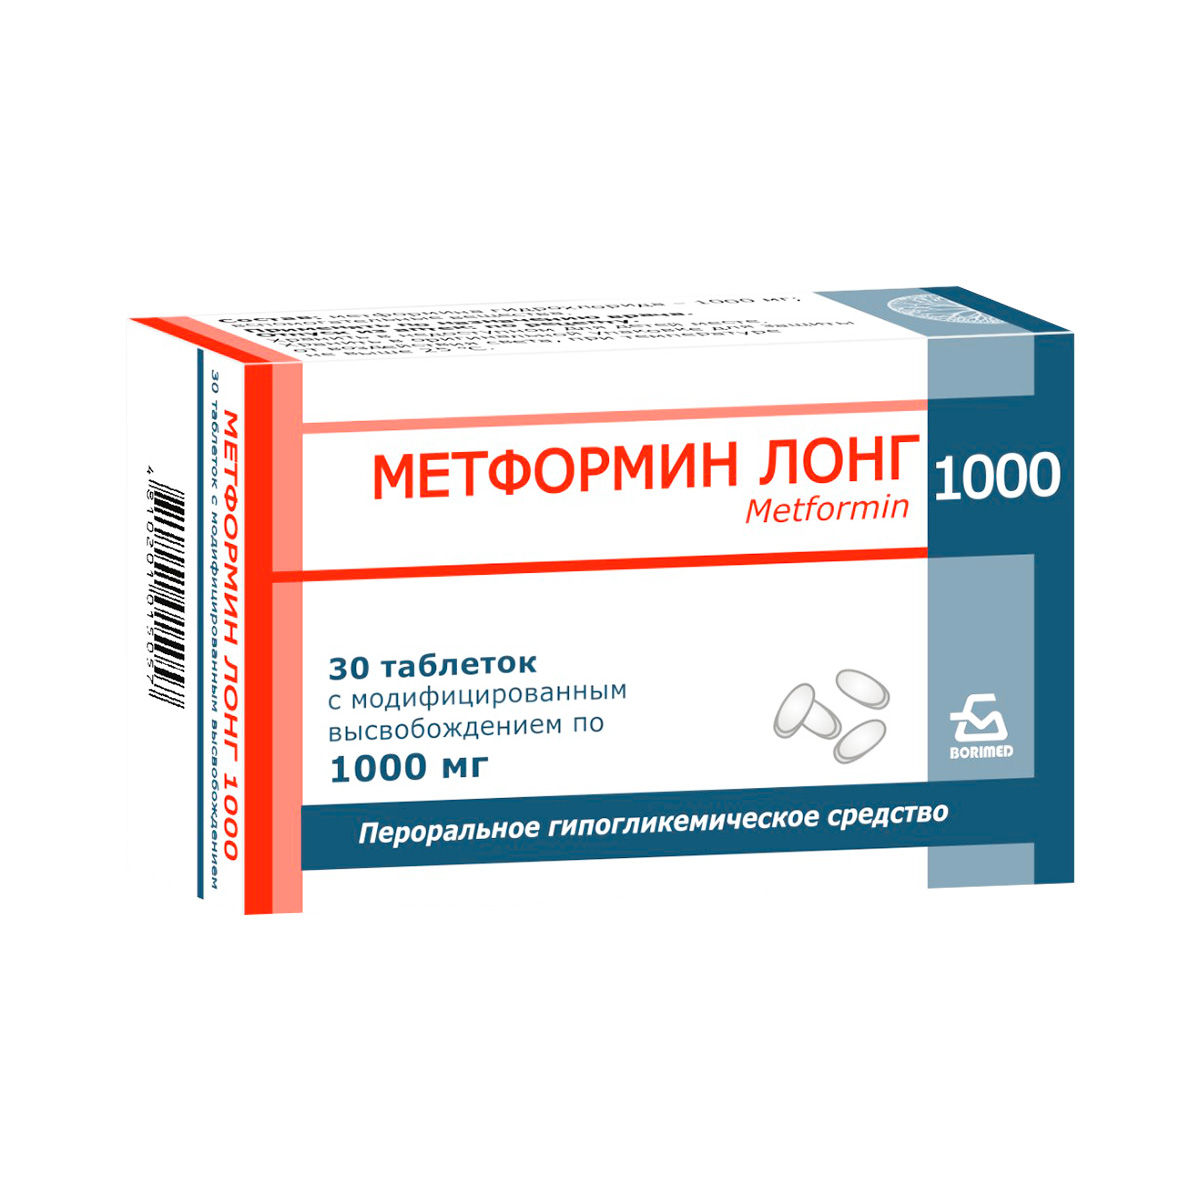 Метформин Лонг 1000 мг таблетки с модифицированным высвобождением 30 шт